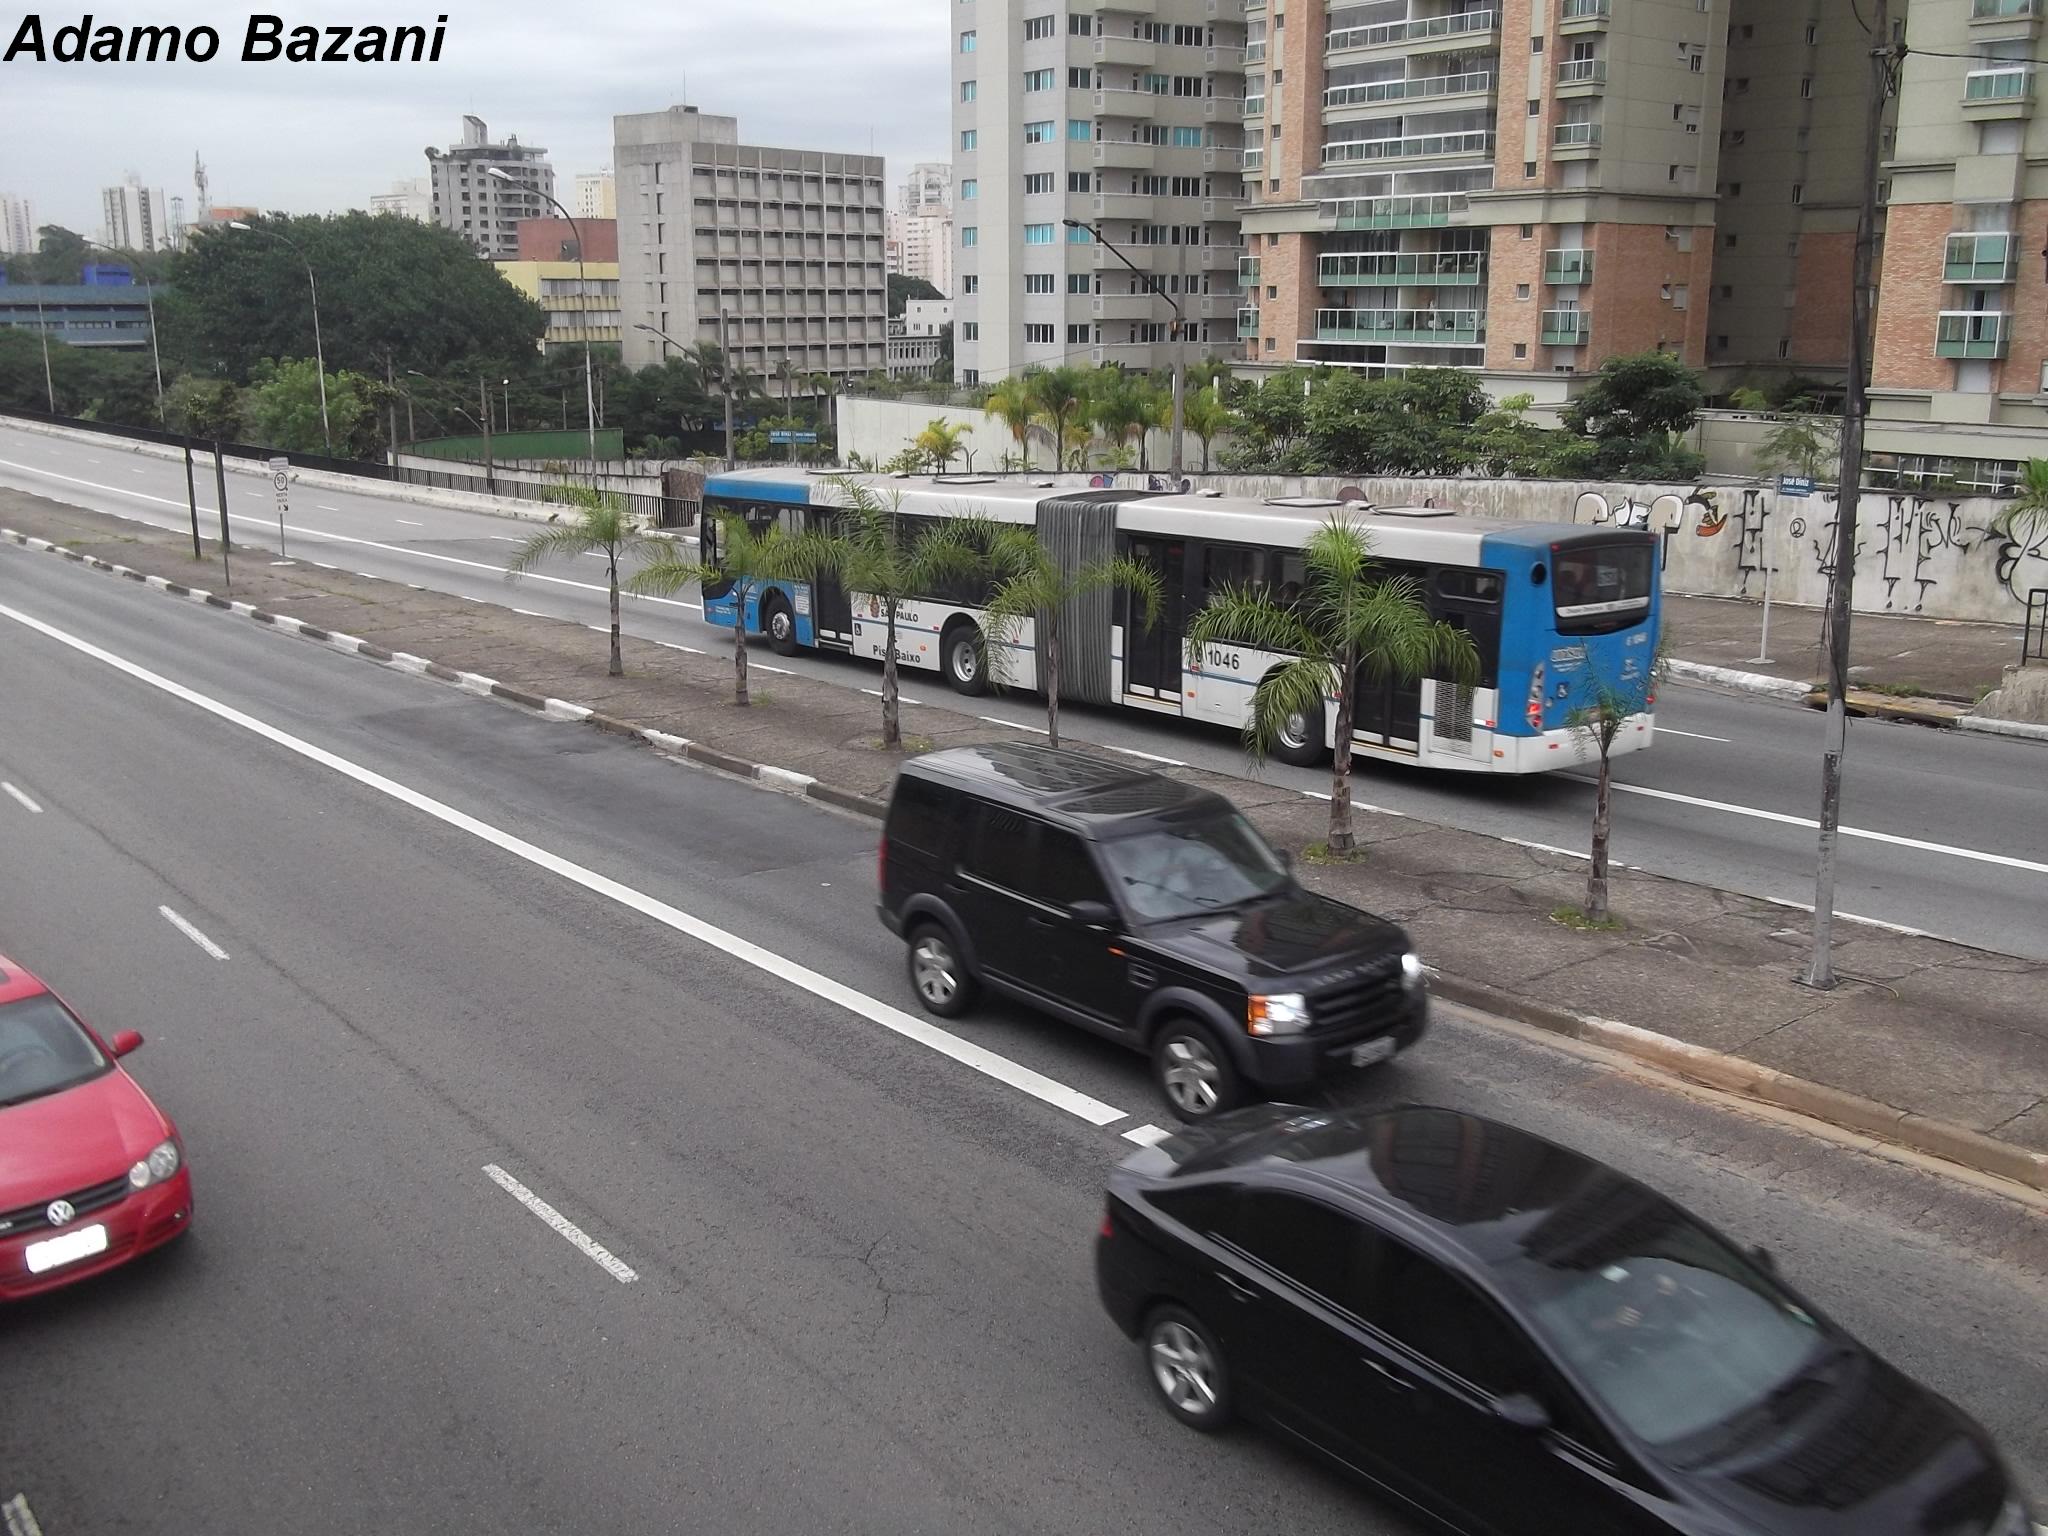 Carros invadem corredor de ônibus - Imagem de Adamo Bazani